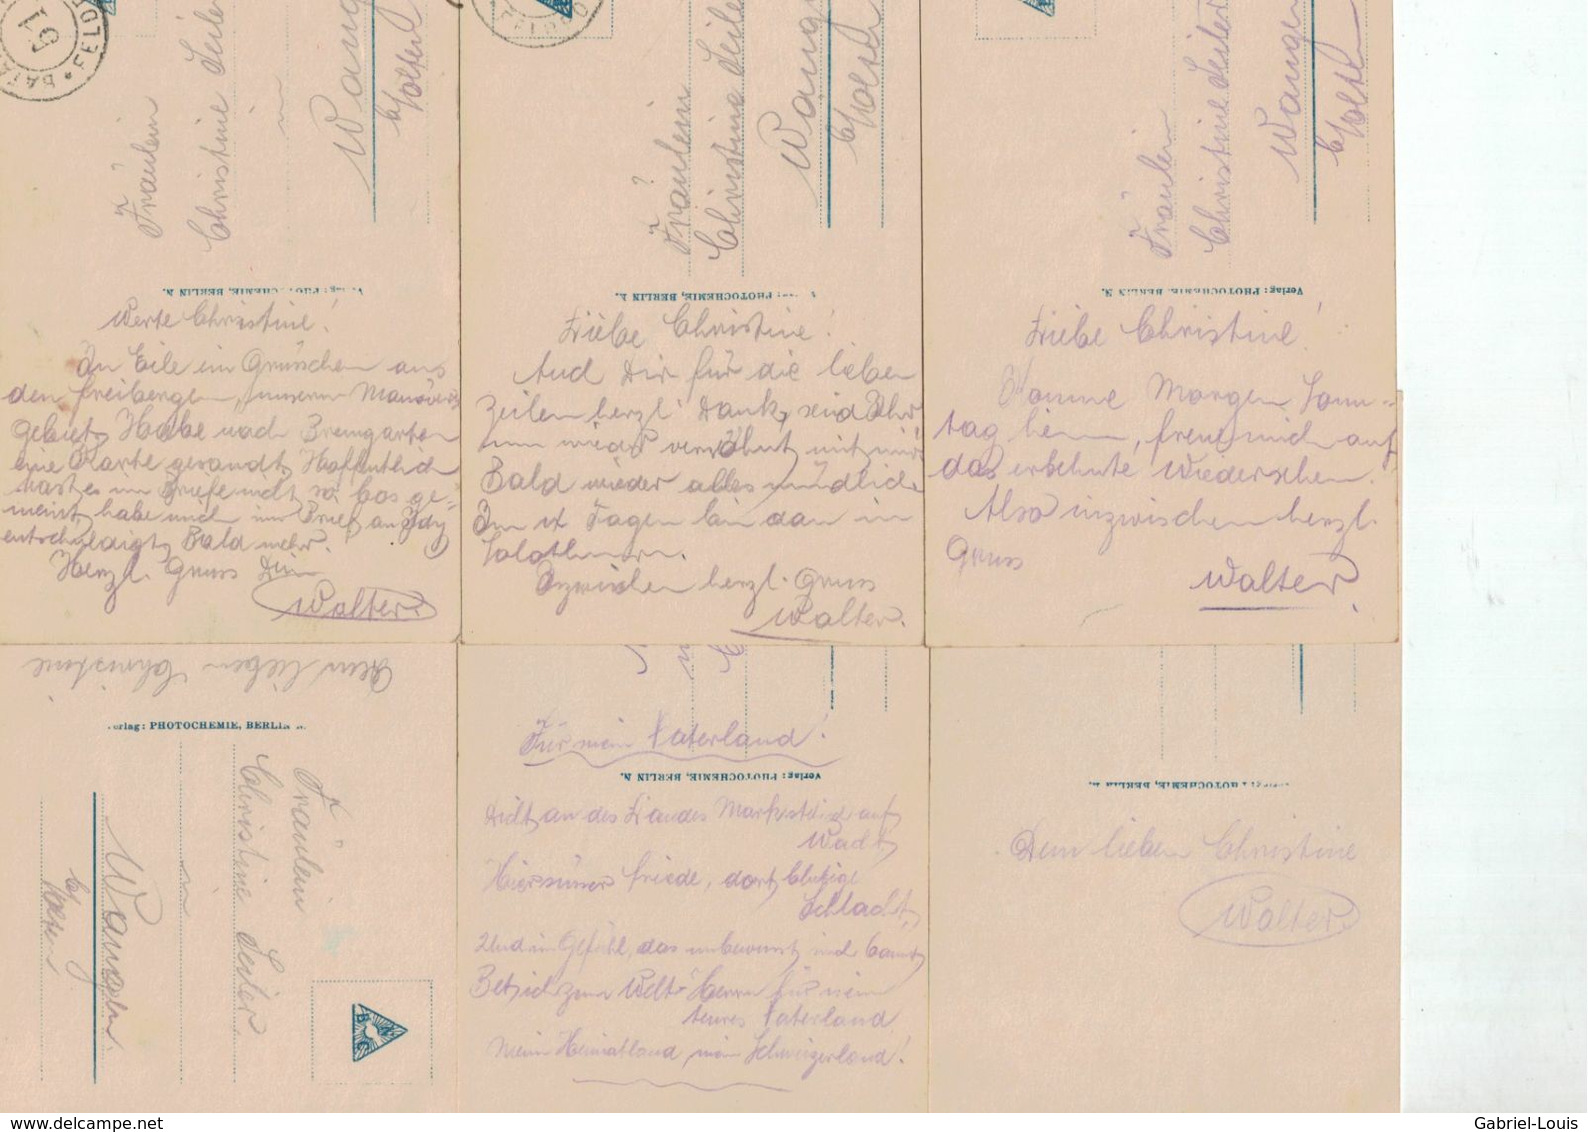 Bleib Bei Mir Und Geh' Nicht Fort -  Set Mit Sechs Postkarten - Guerre 1914-18 - Deutschland - Krieg - Beerdigungen